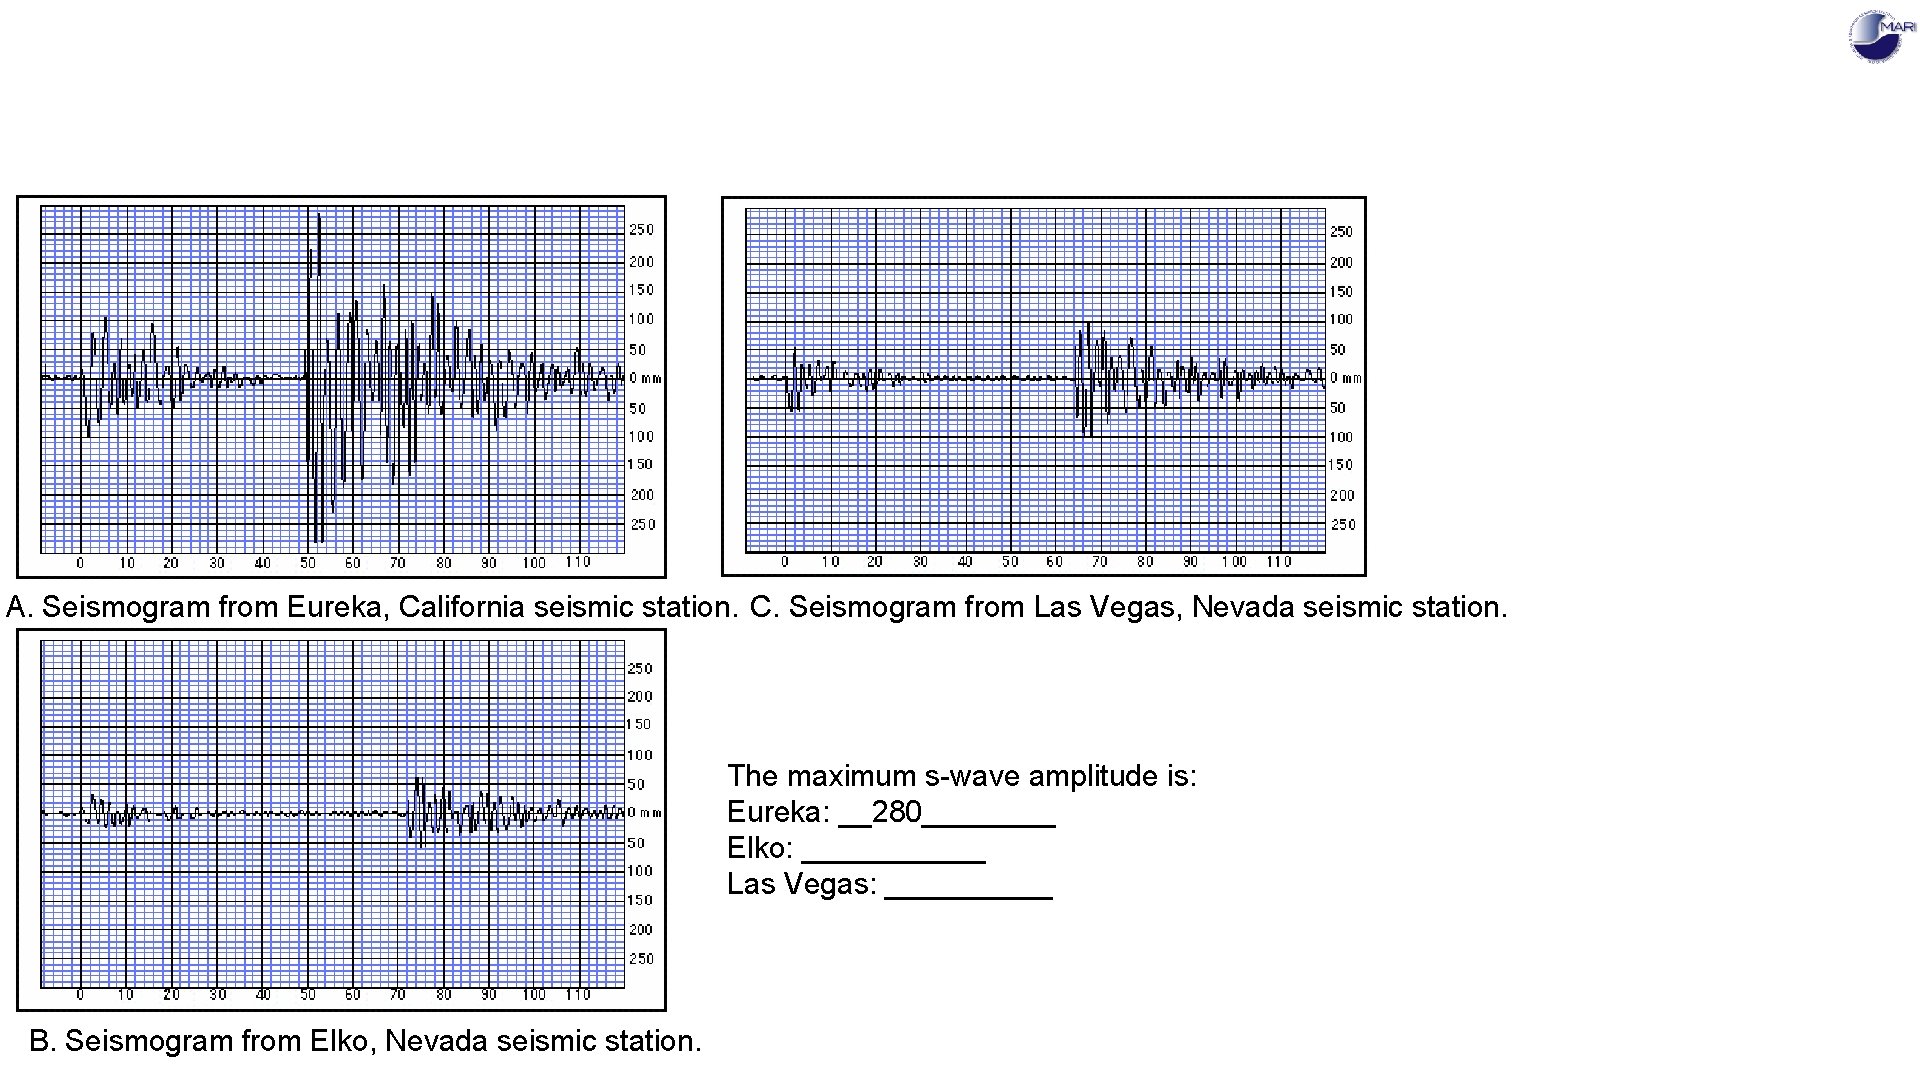 A. Seismogram from Eureka, California seismic station. C. Seismogram from Las Vegas, Nevada seismic